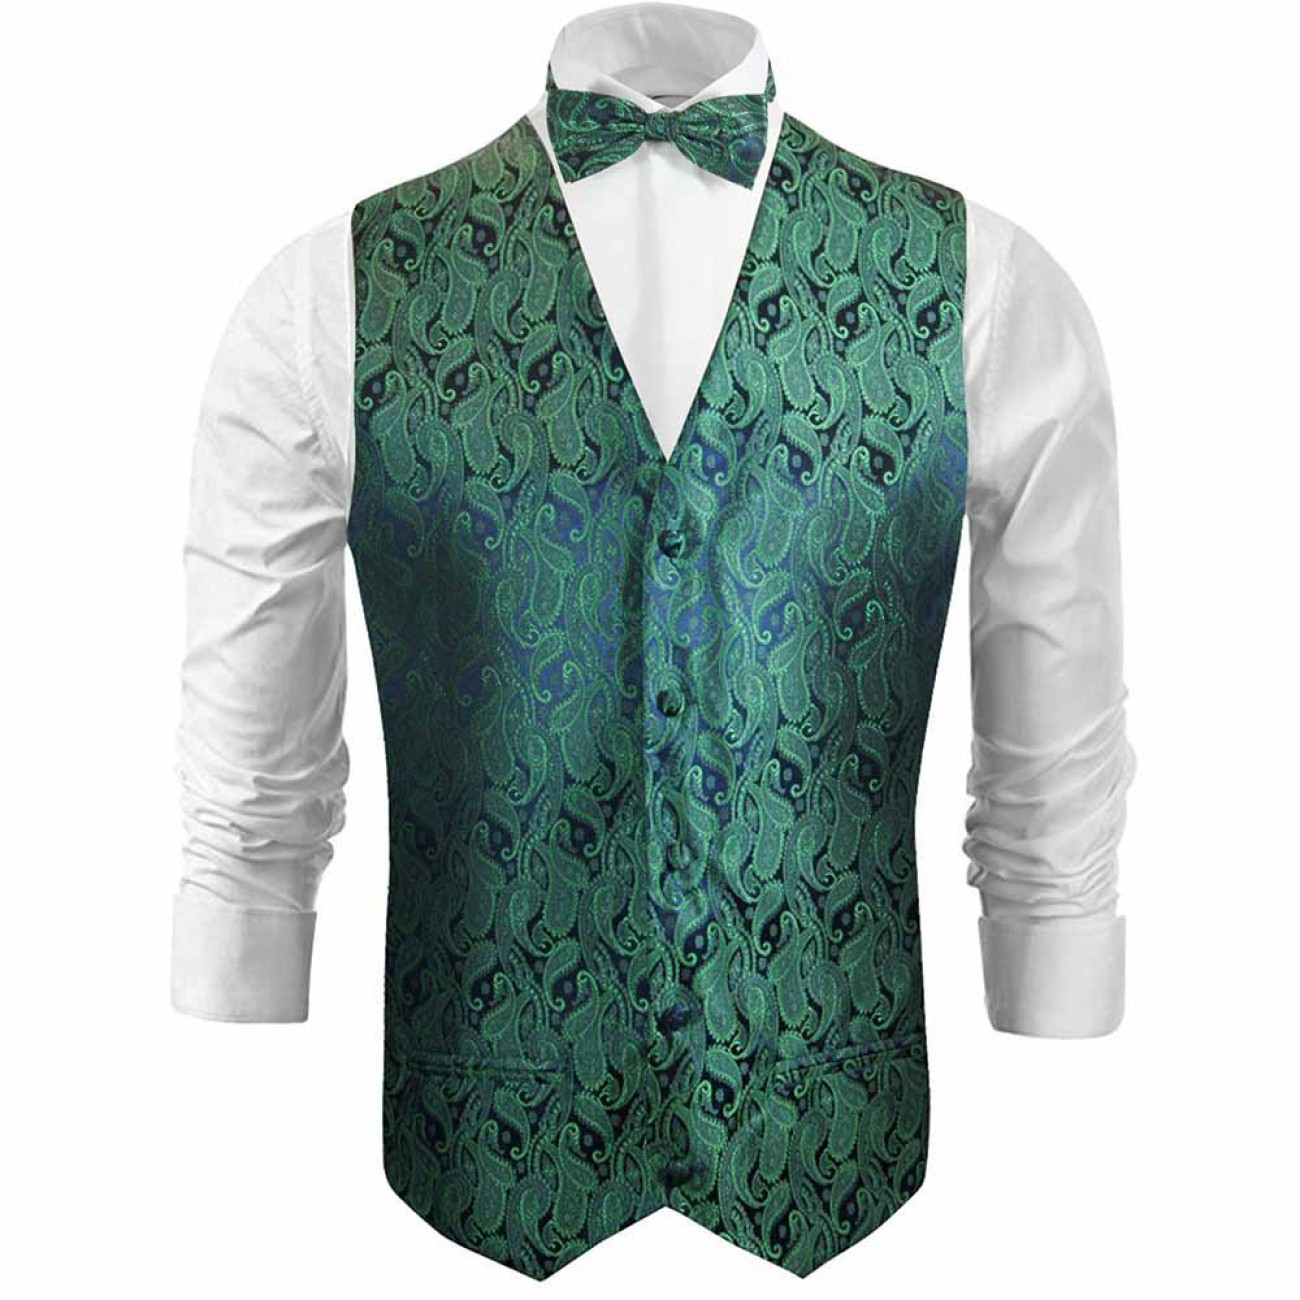 tuxedo vest green paisley wedding waistcoat and bow tie